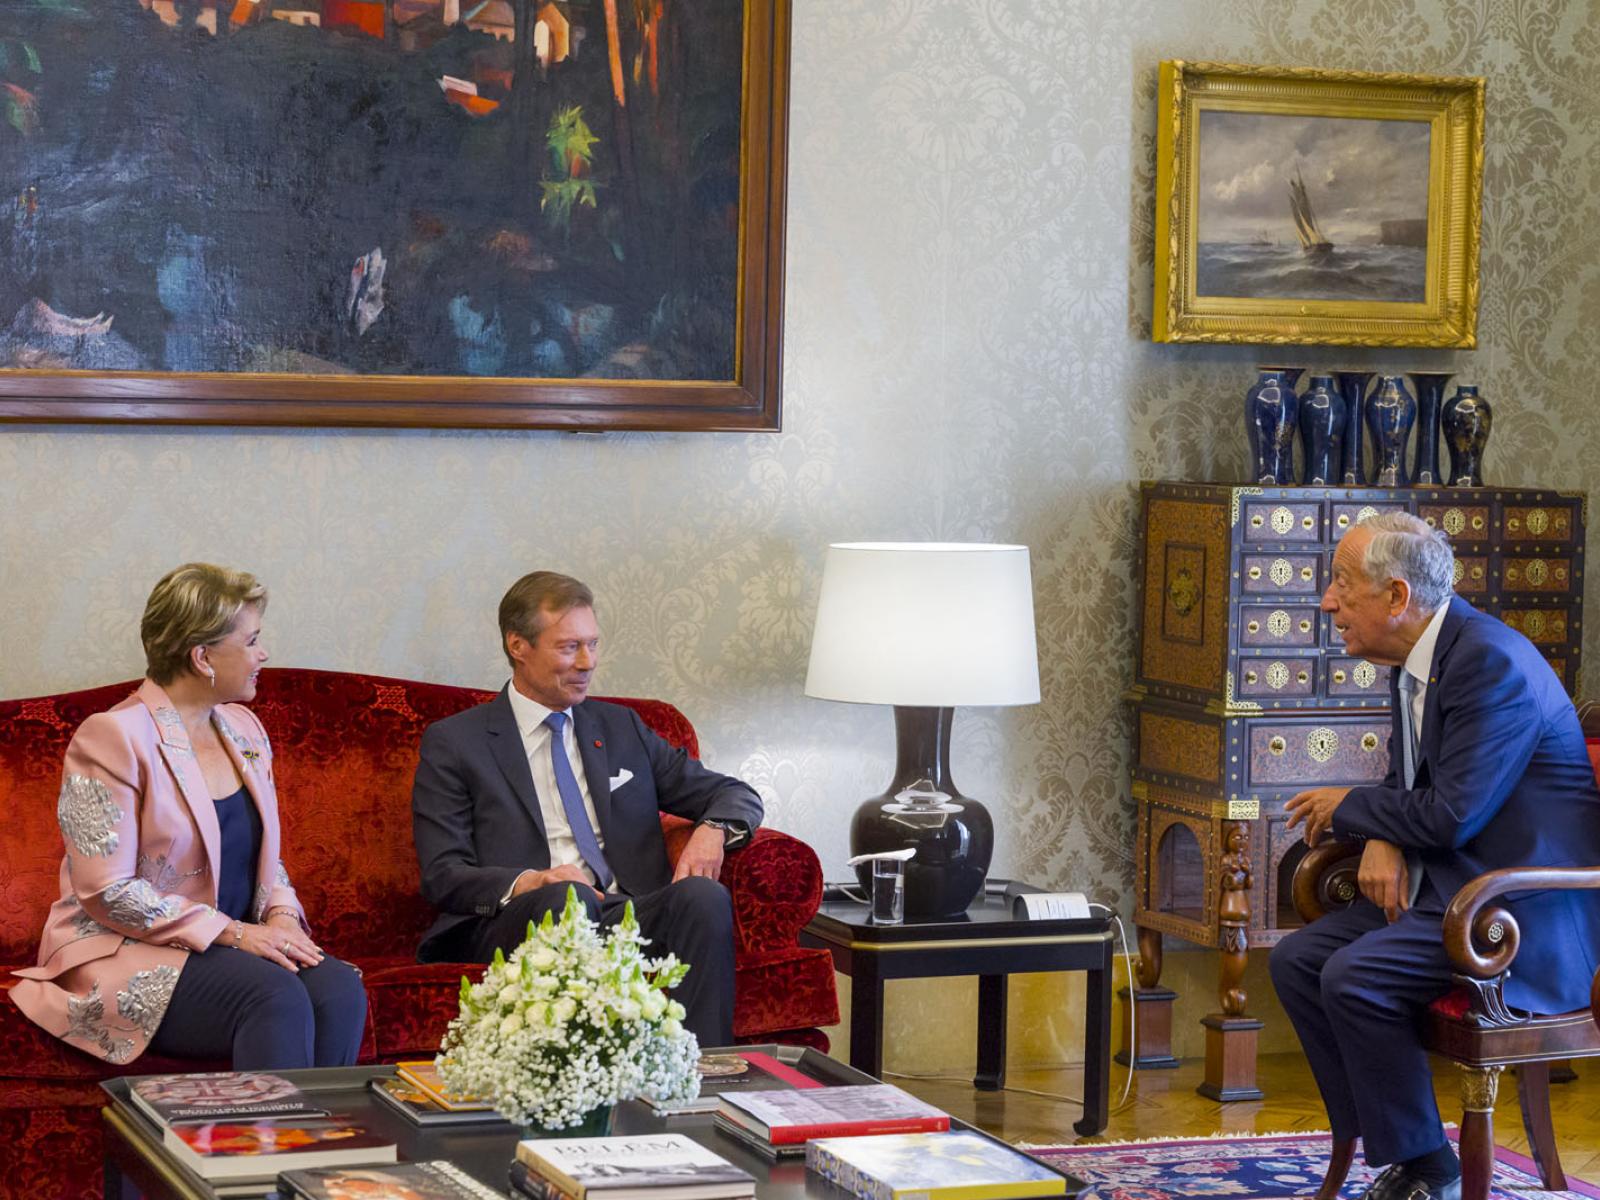 Le Couple grand-ducal s'entretient avec le président portugais